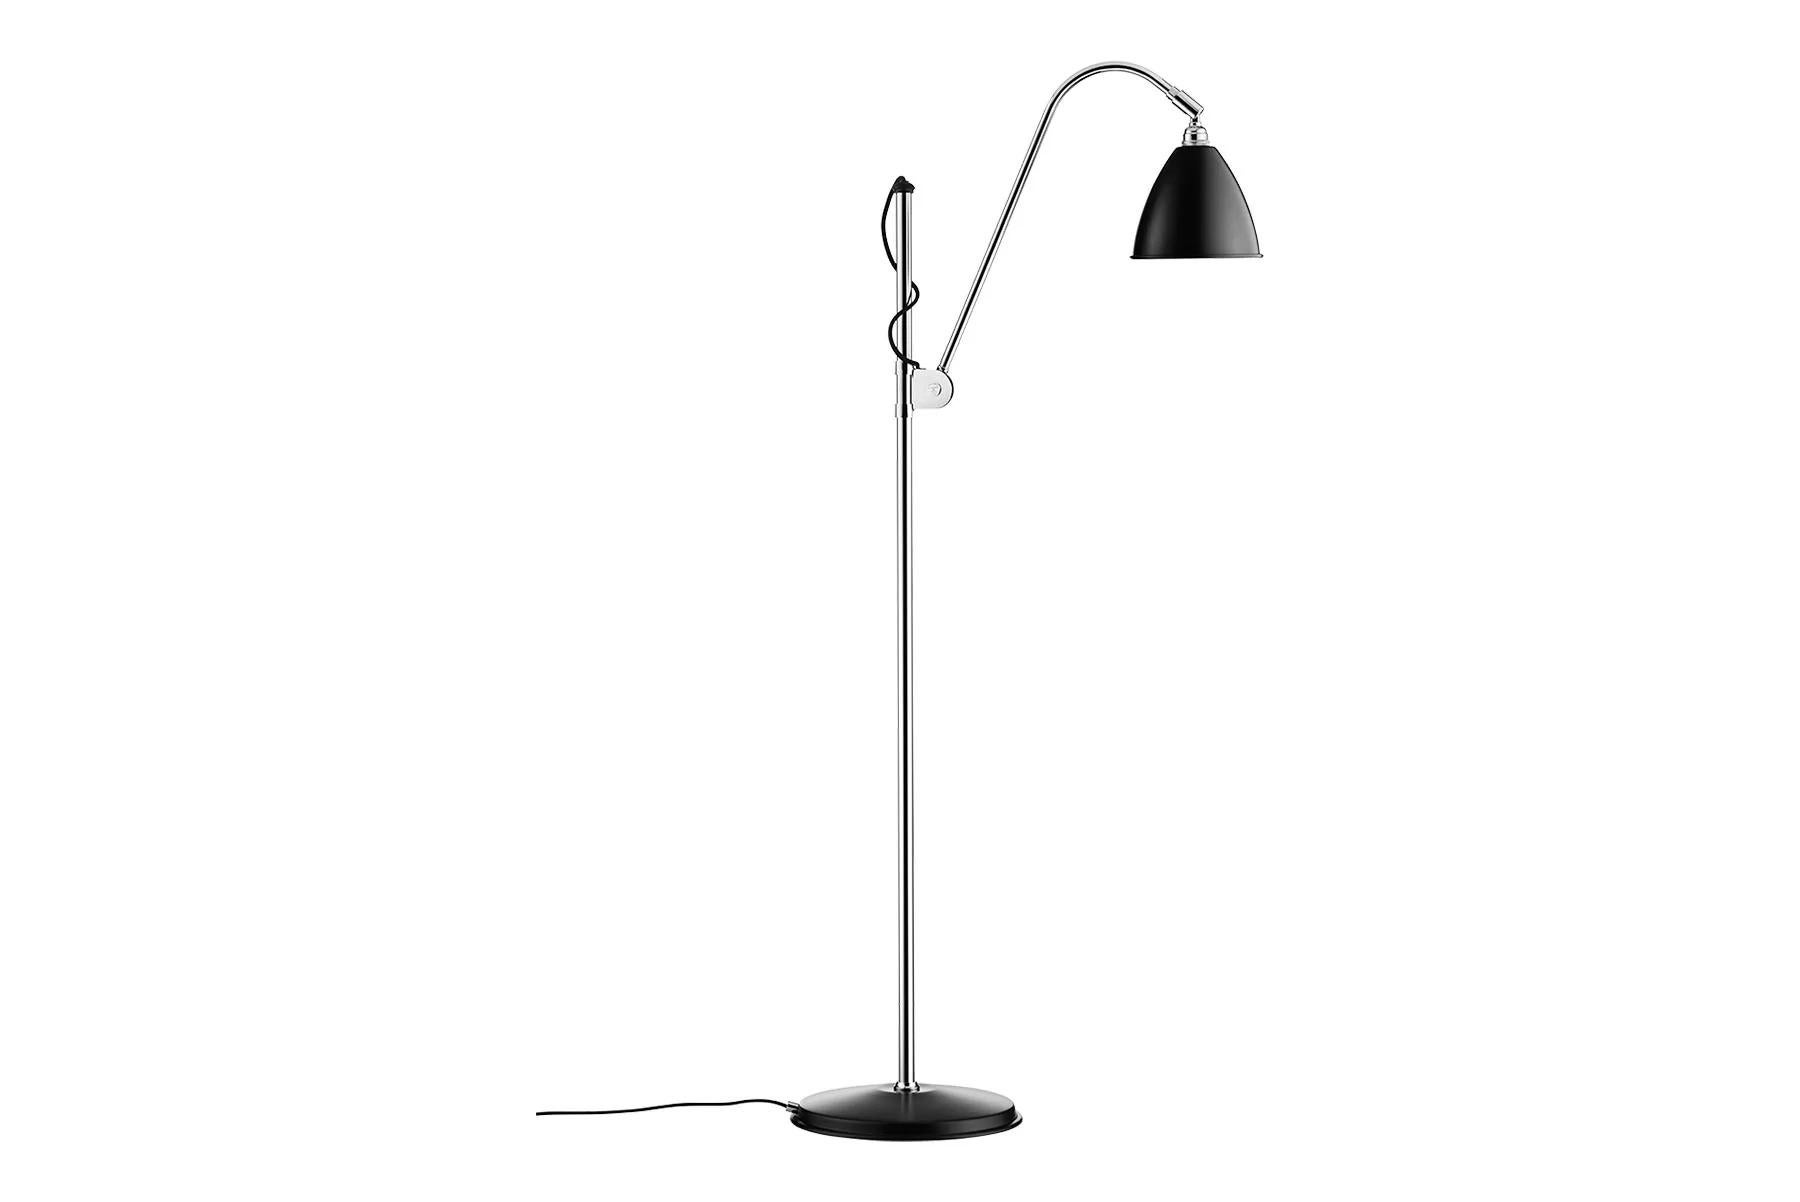 Le lampadaire Bestlite BL3, disponible en deux tailles, a été conçu en 1930 par Robert Dudley Best, un designer britannique fortement influencé par le Bauhaus. Ses lignes pures et son expression élégante sont combinées à la grande fonctionnalité du